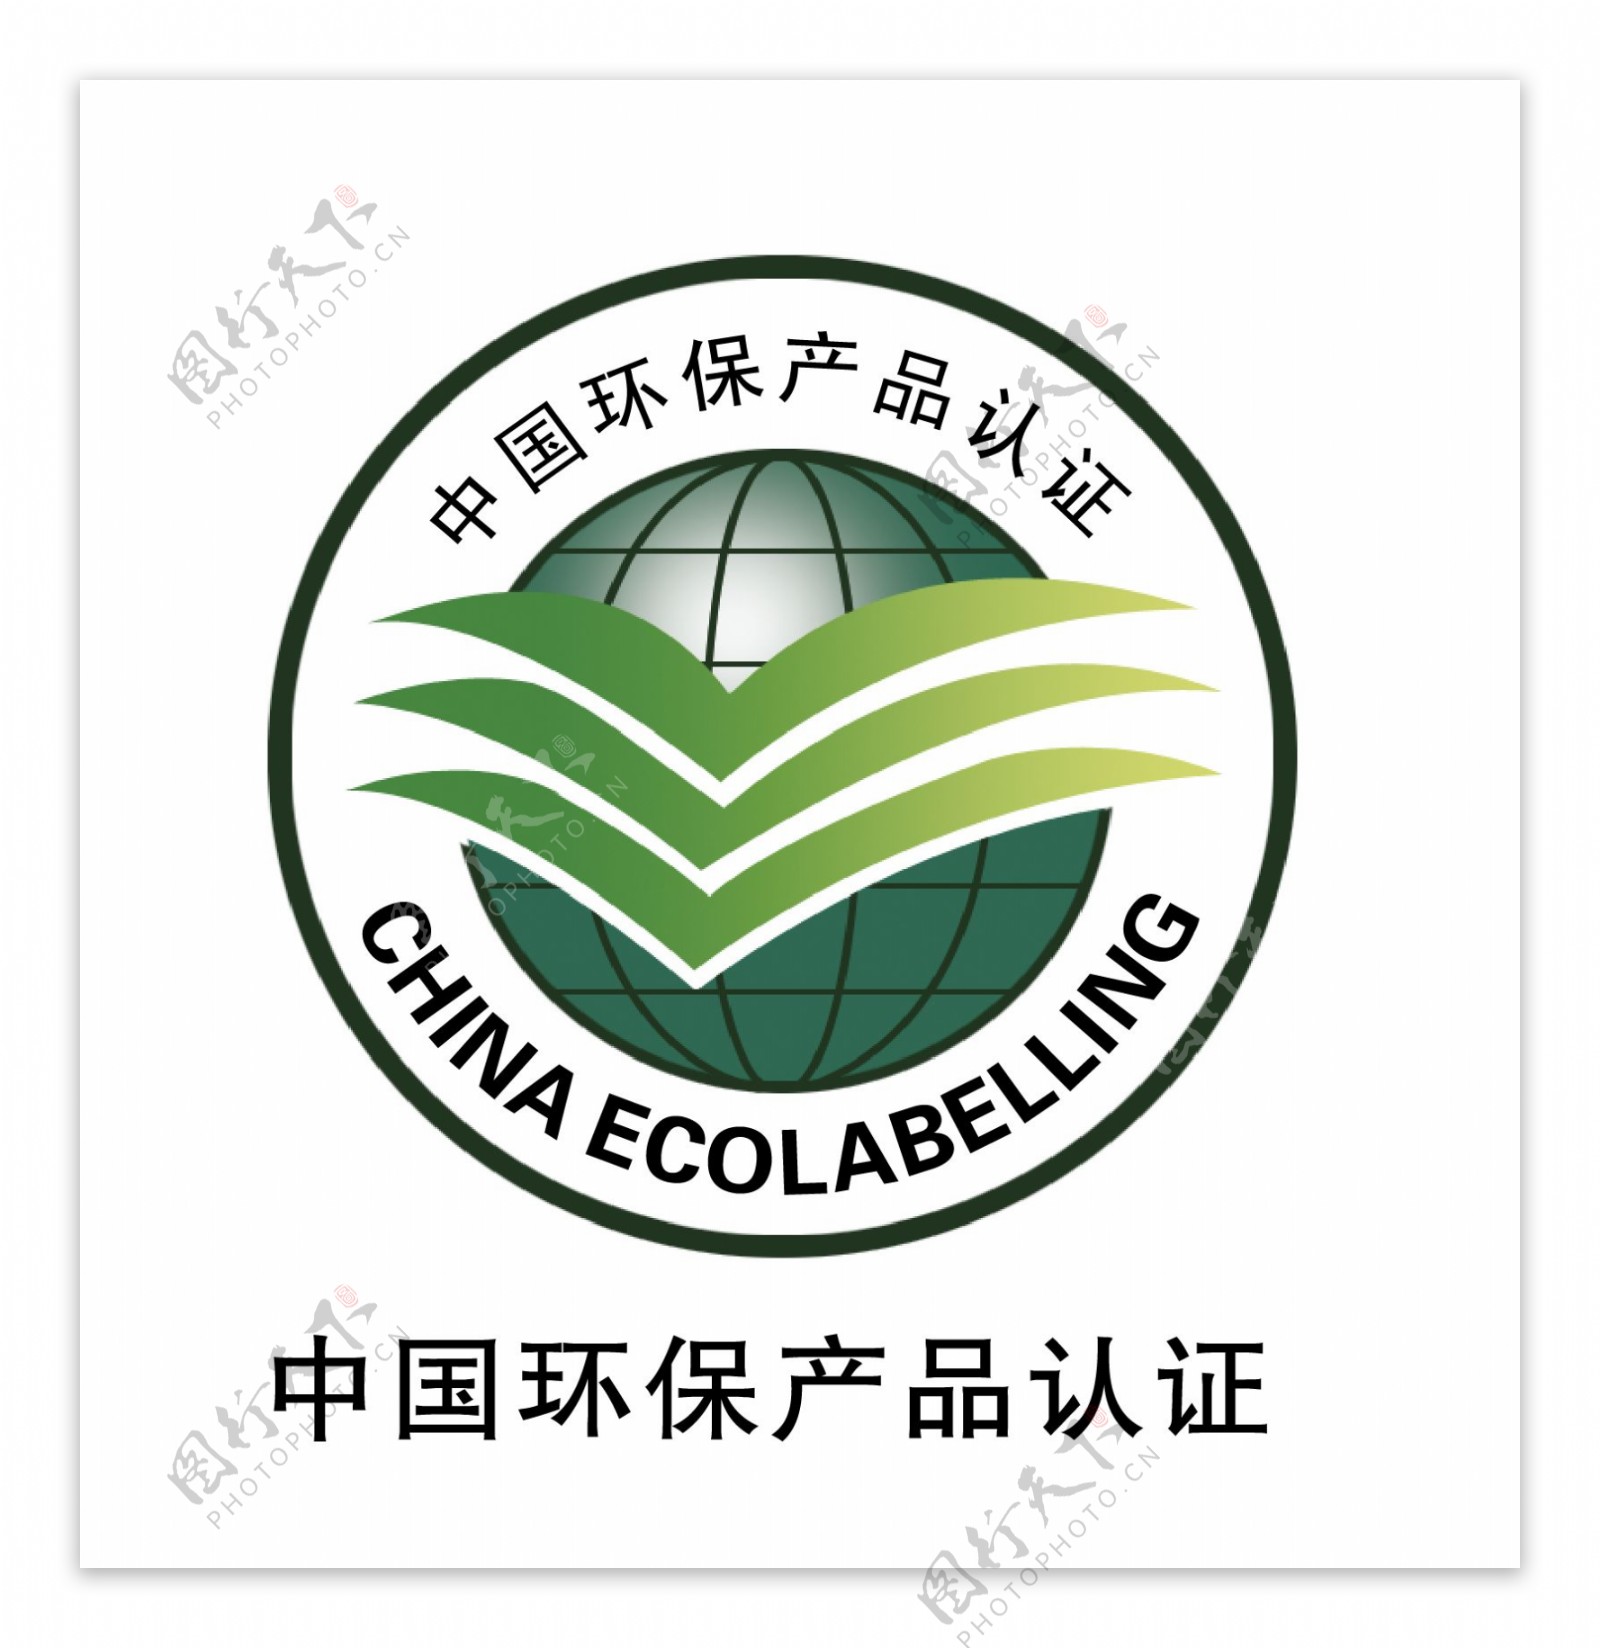 中国环保产品认证标示